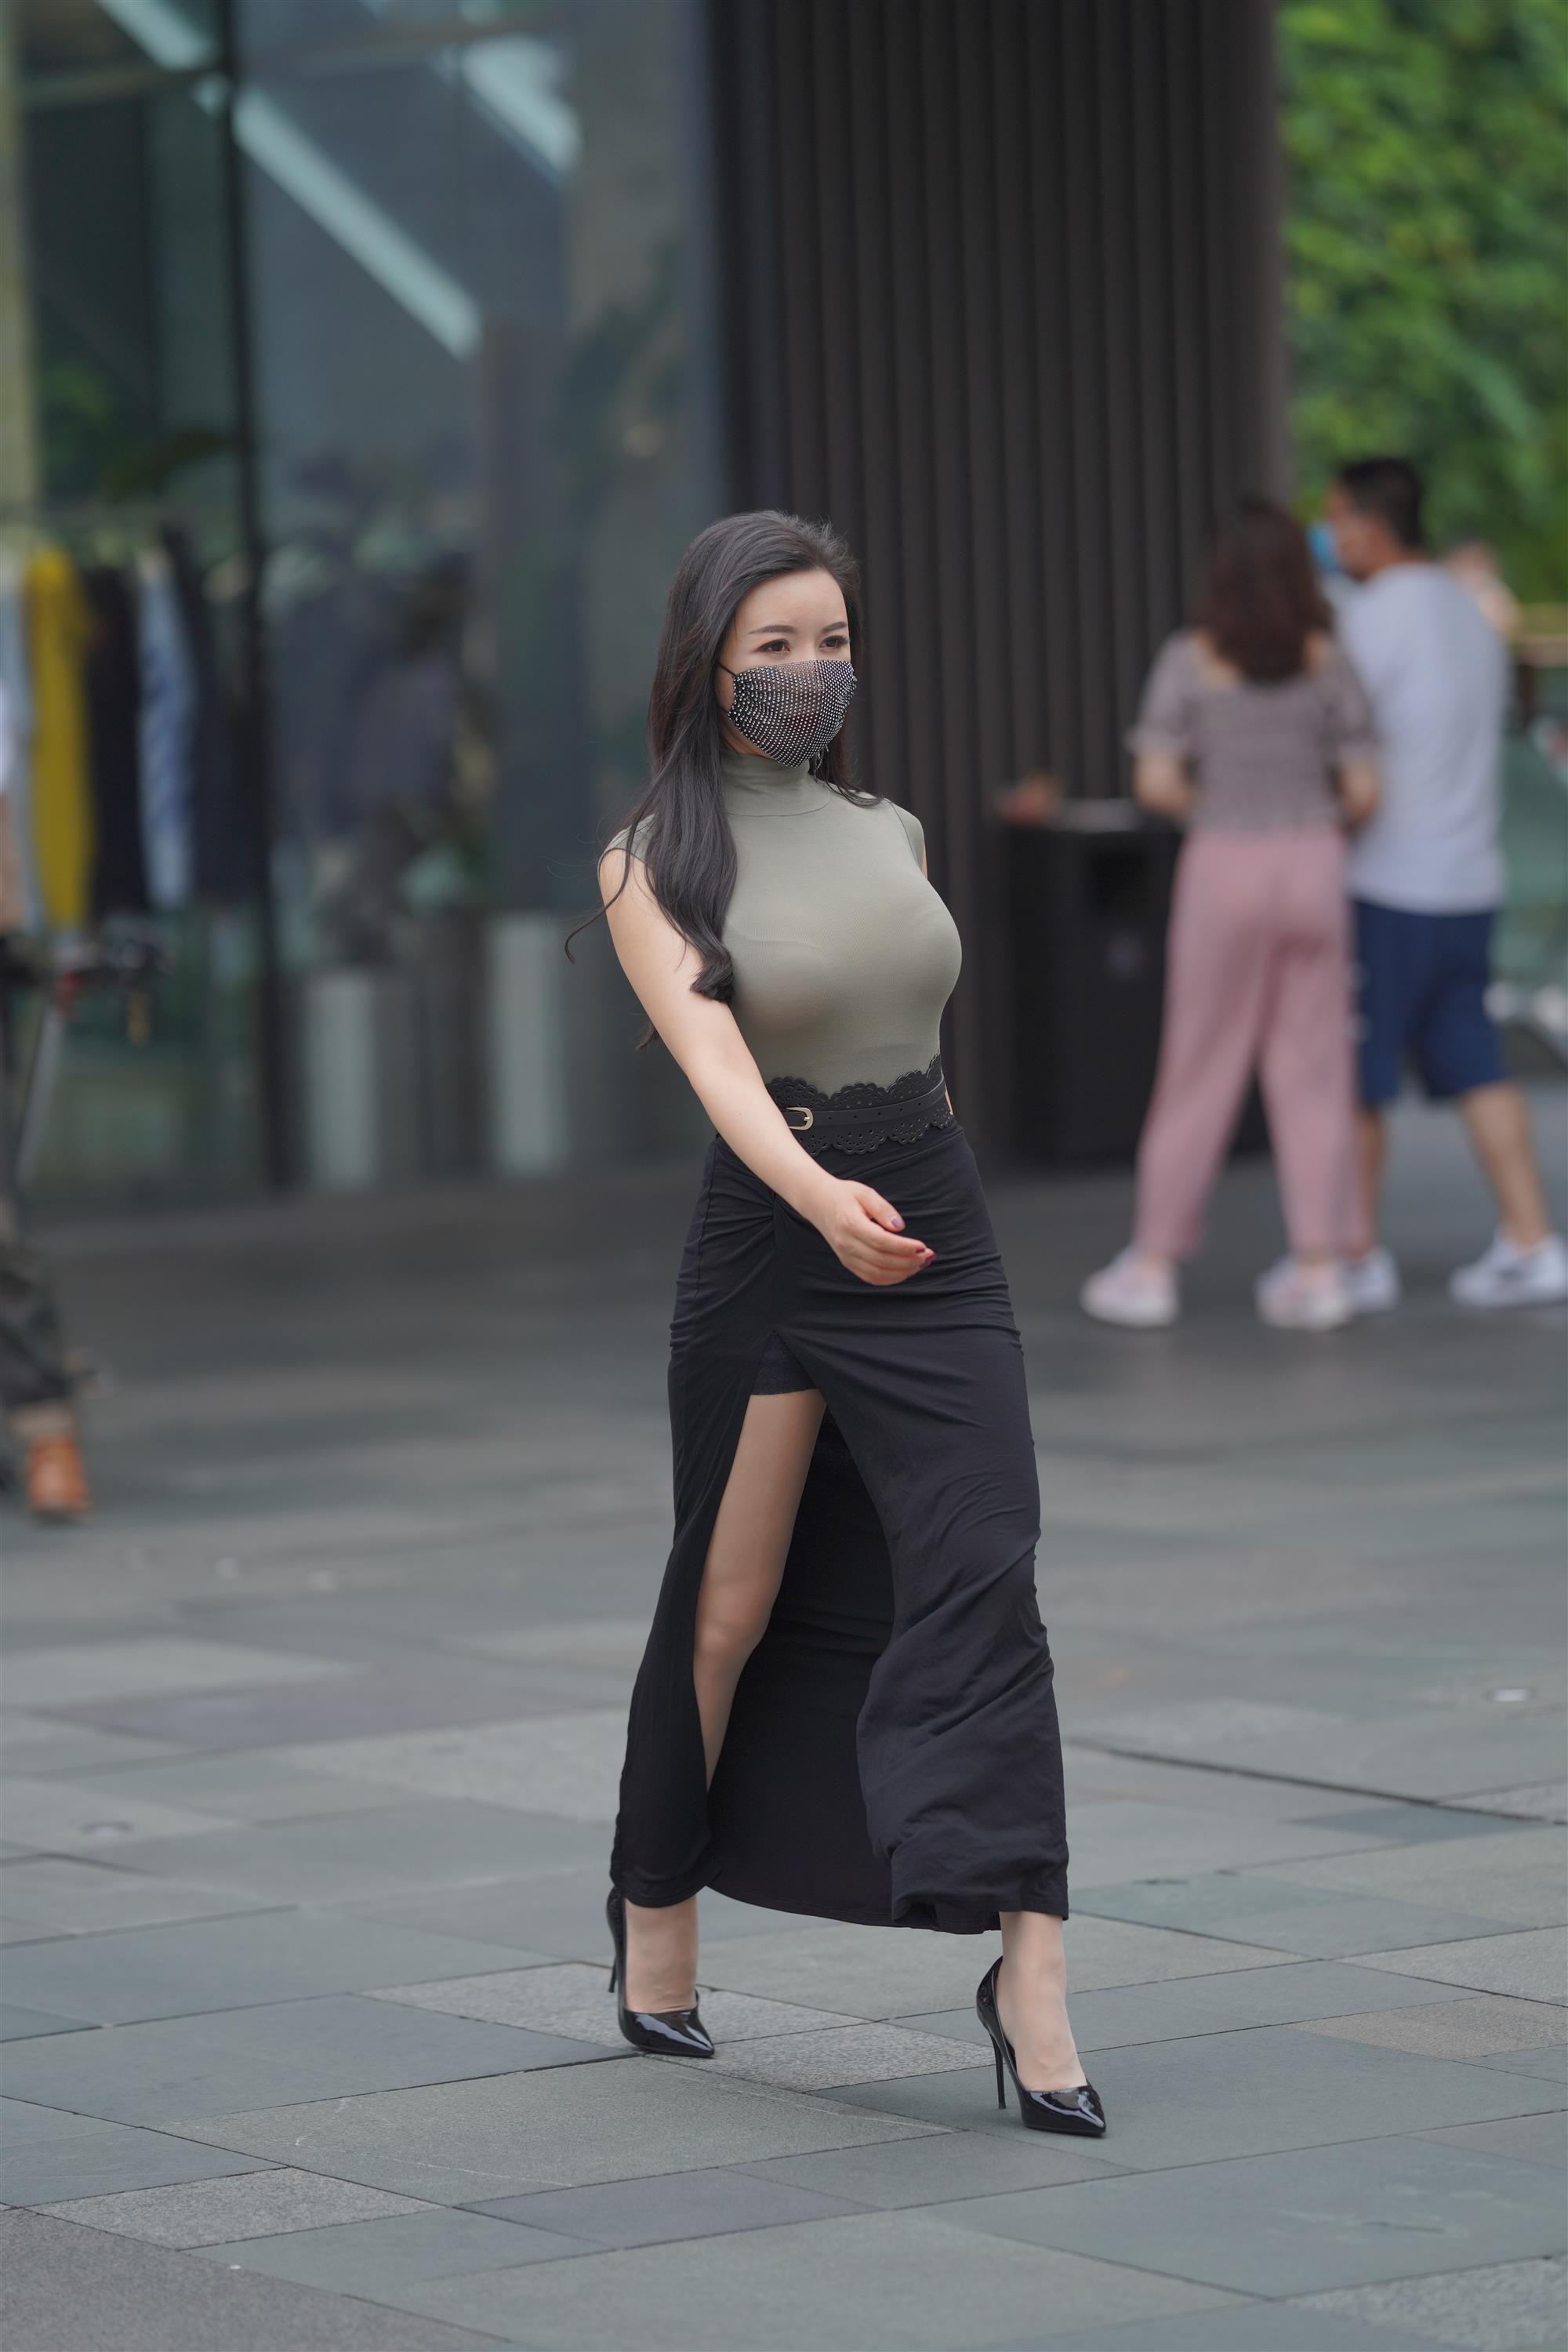 Street 欣儿 Long black skirt - 109.jpg